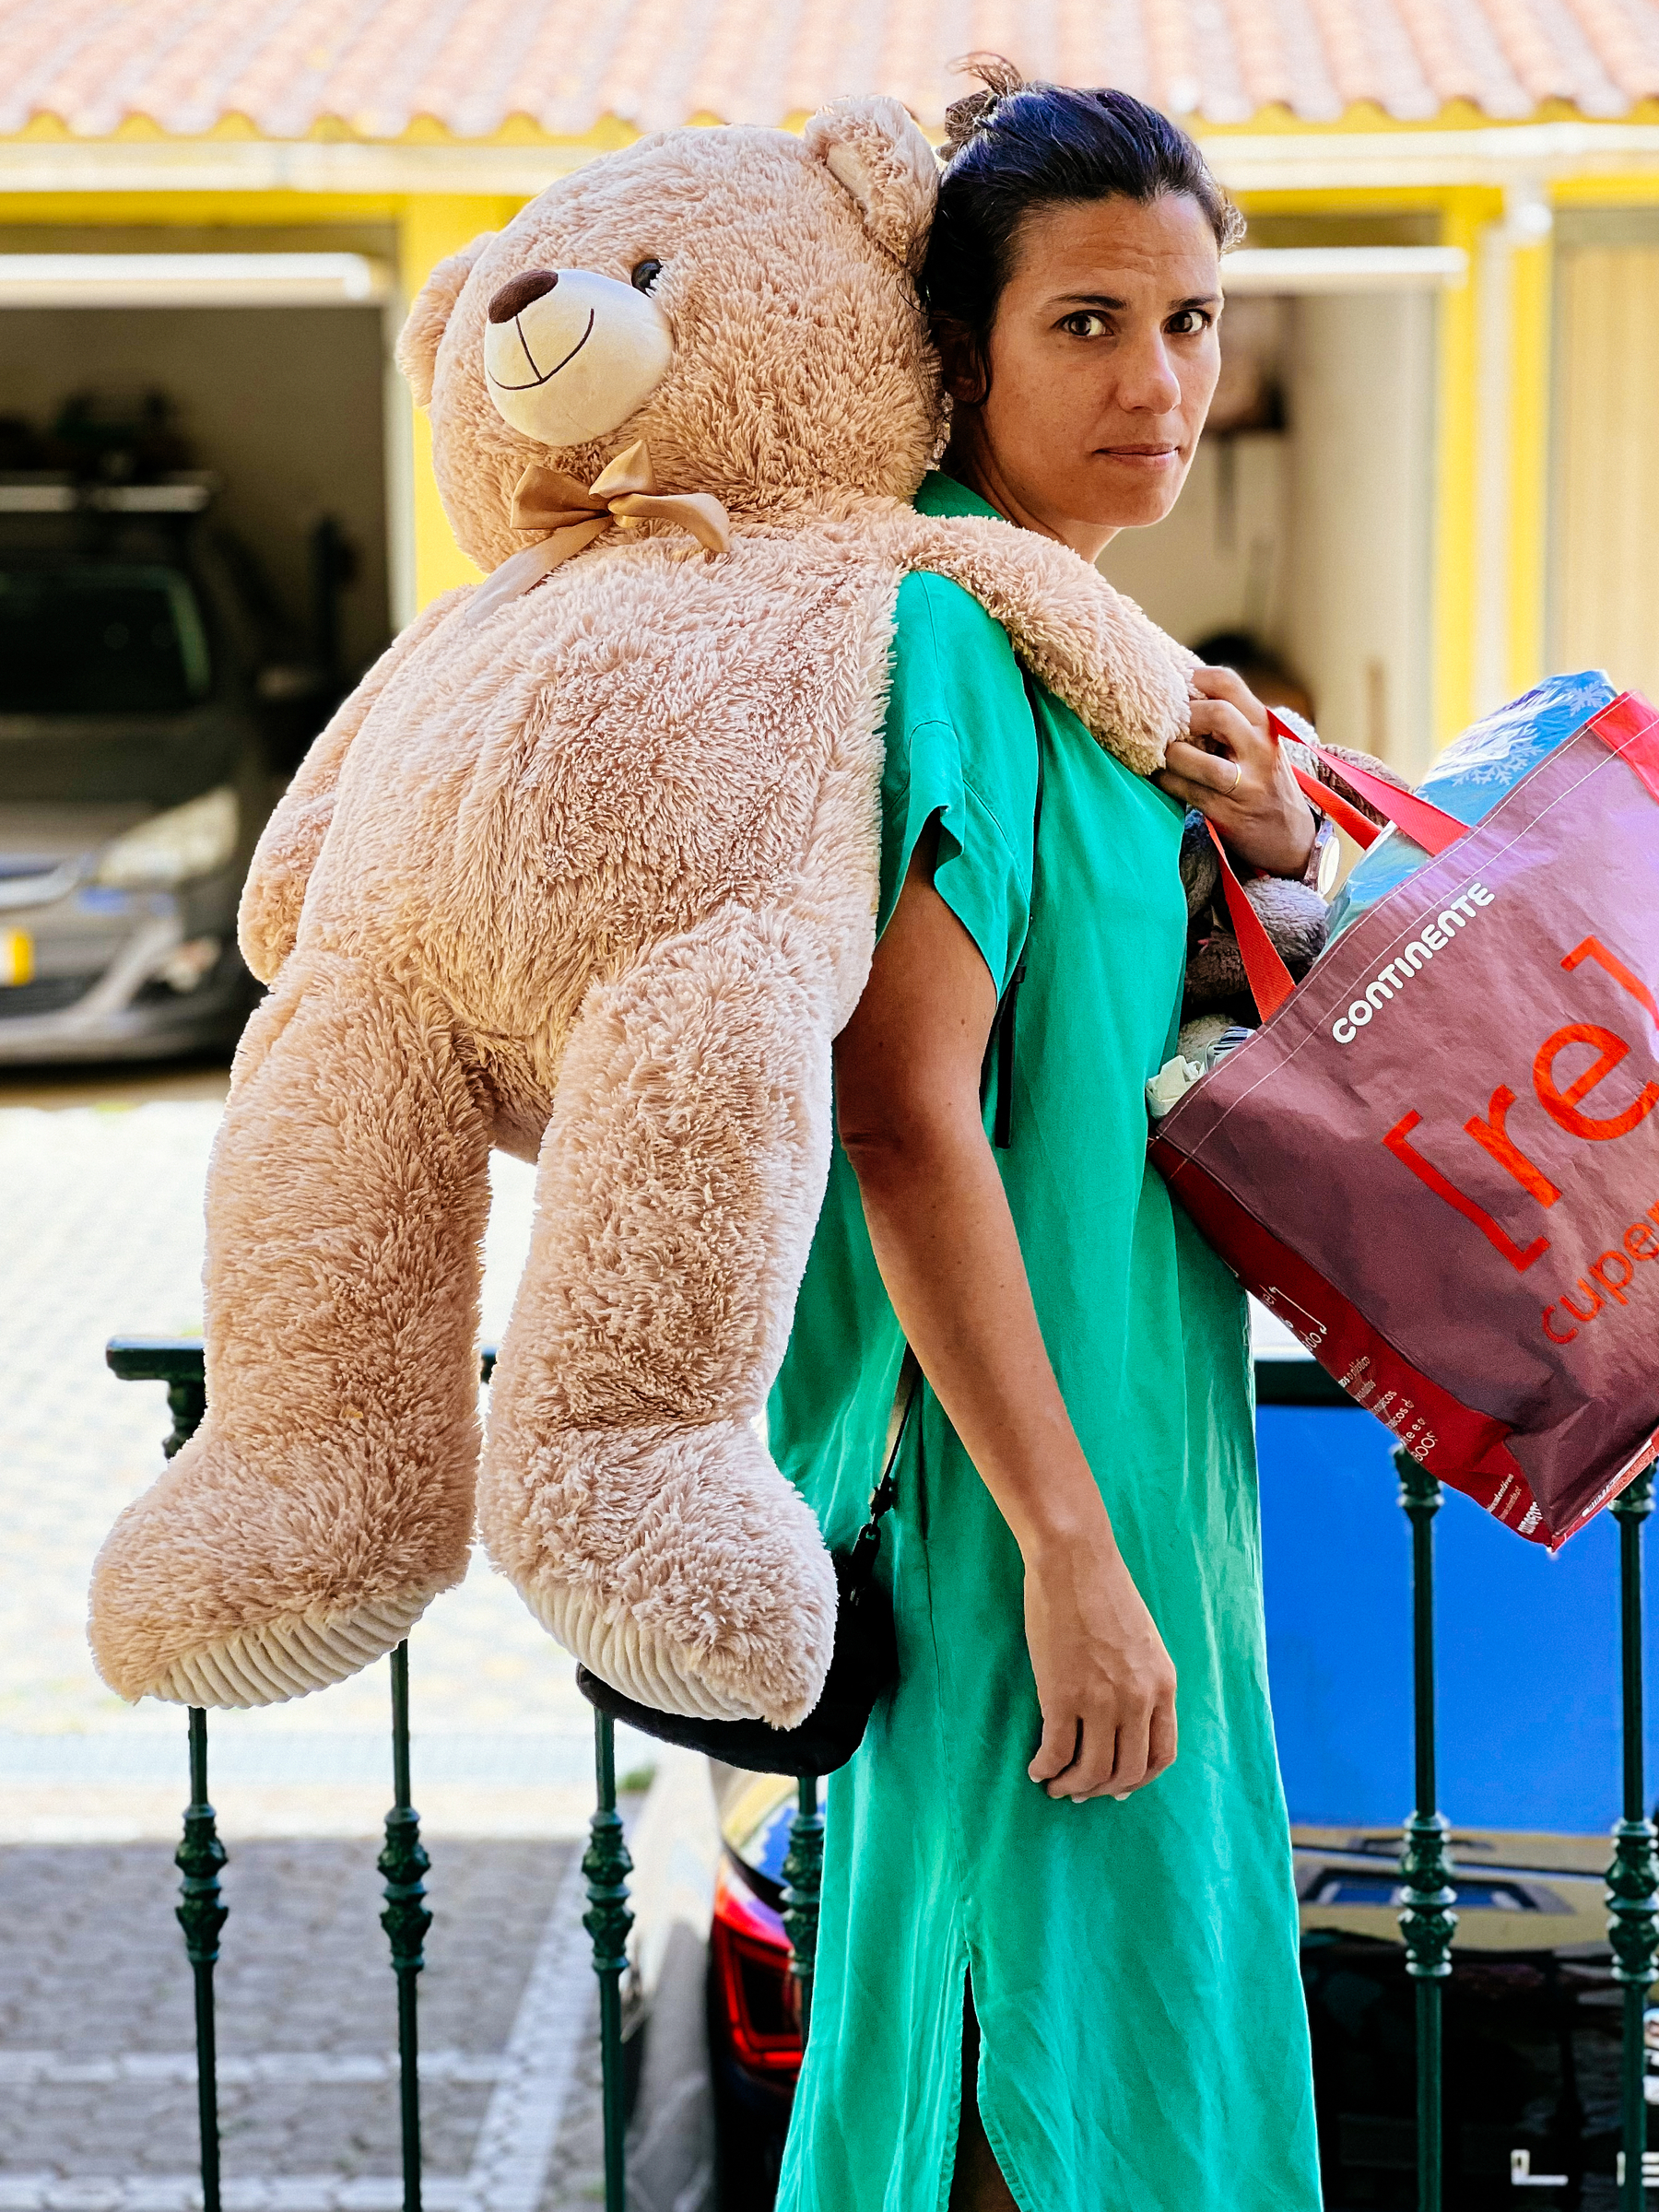 a woman carries a giant teddy bear.